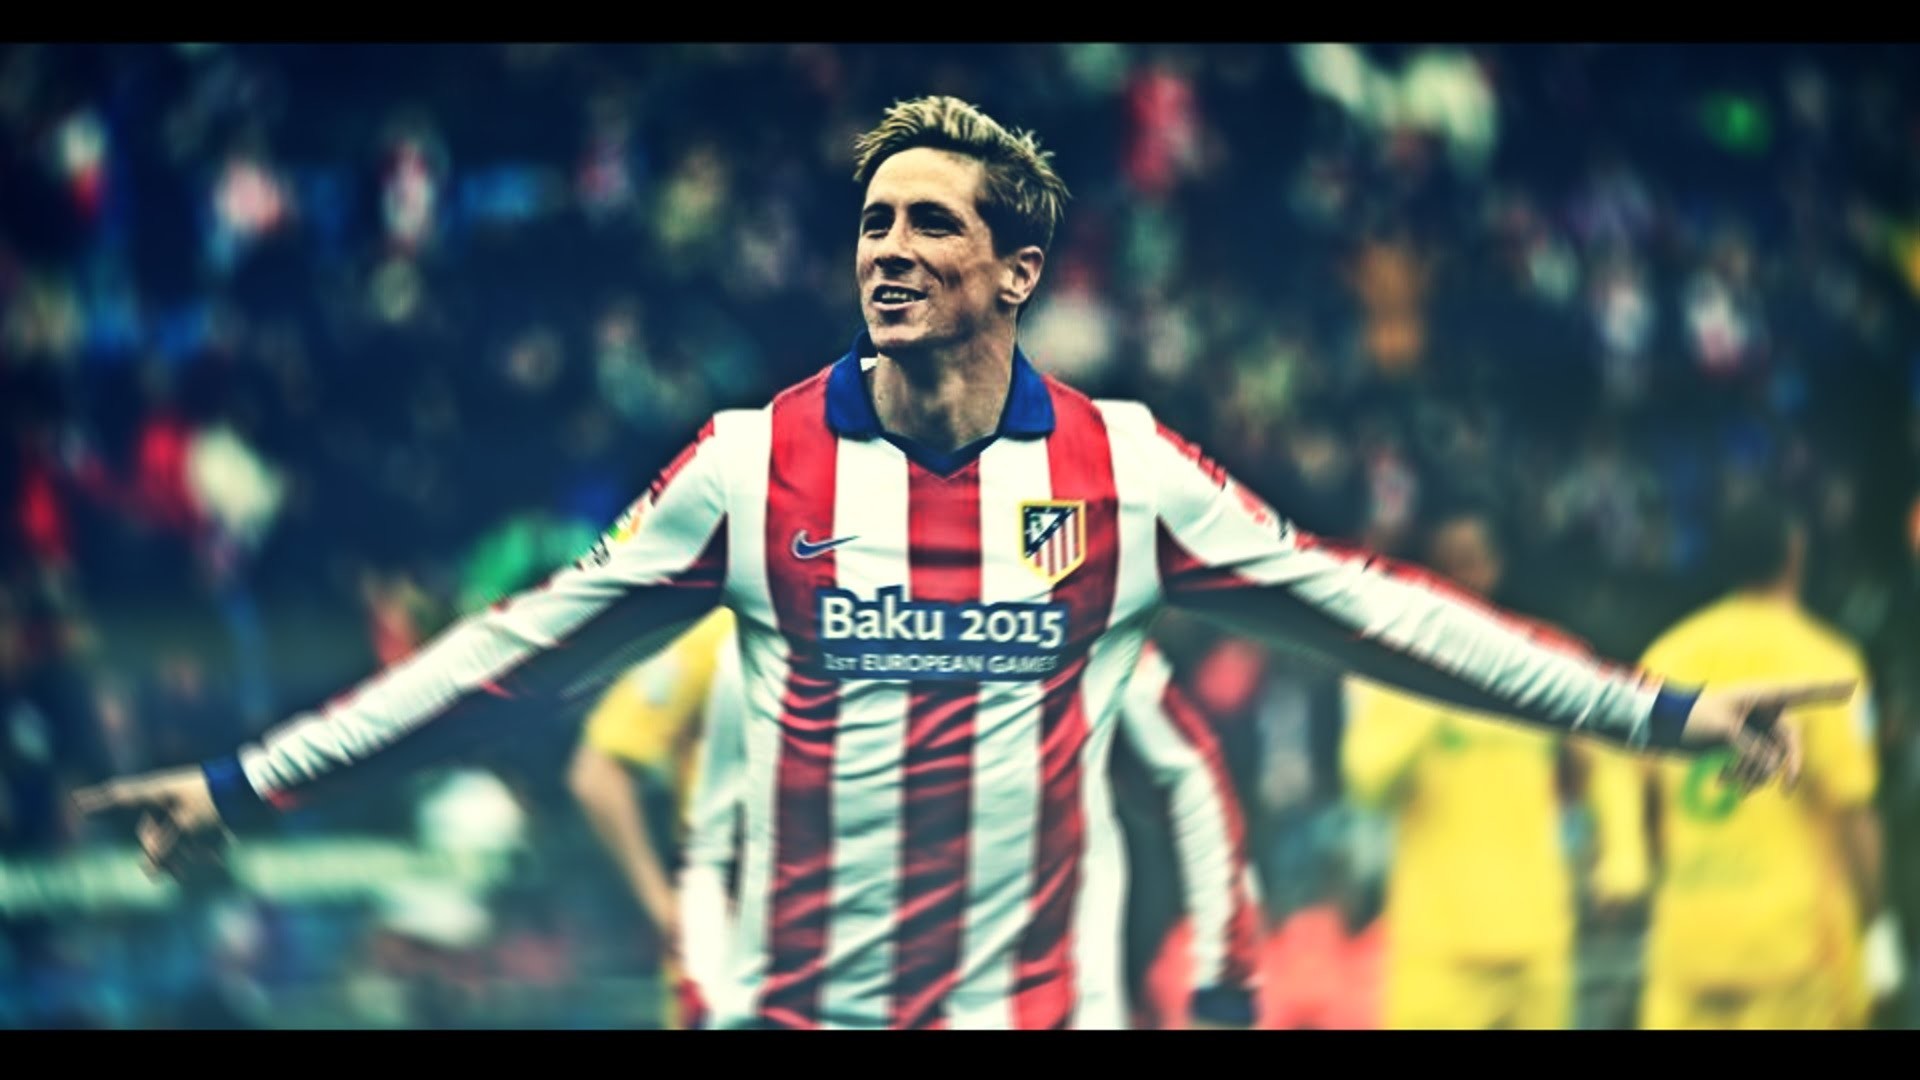 1920x1080 Fernando Torres - Atletico Madrid - Goals & Skills 2015 - HD